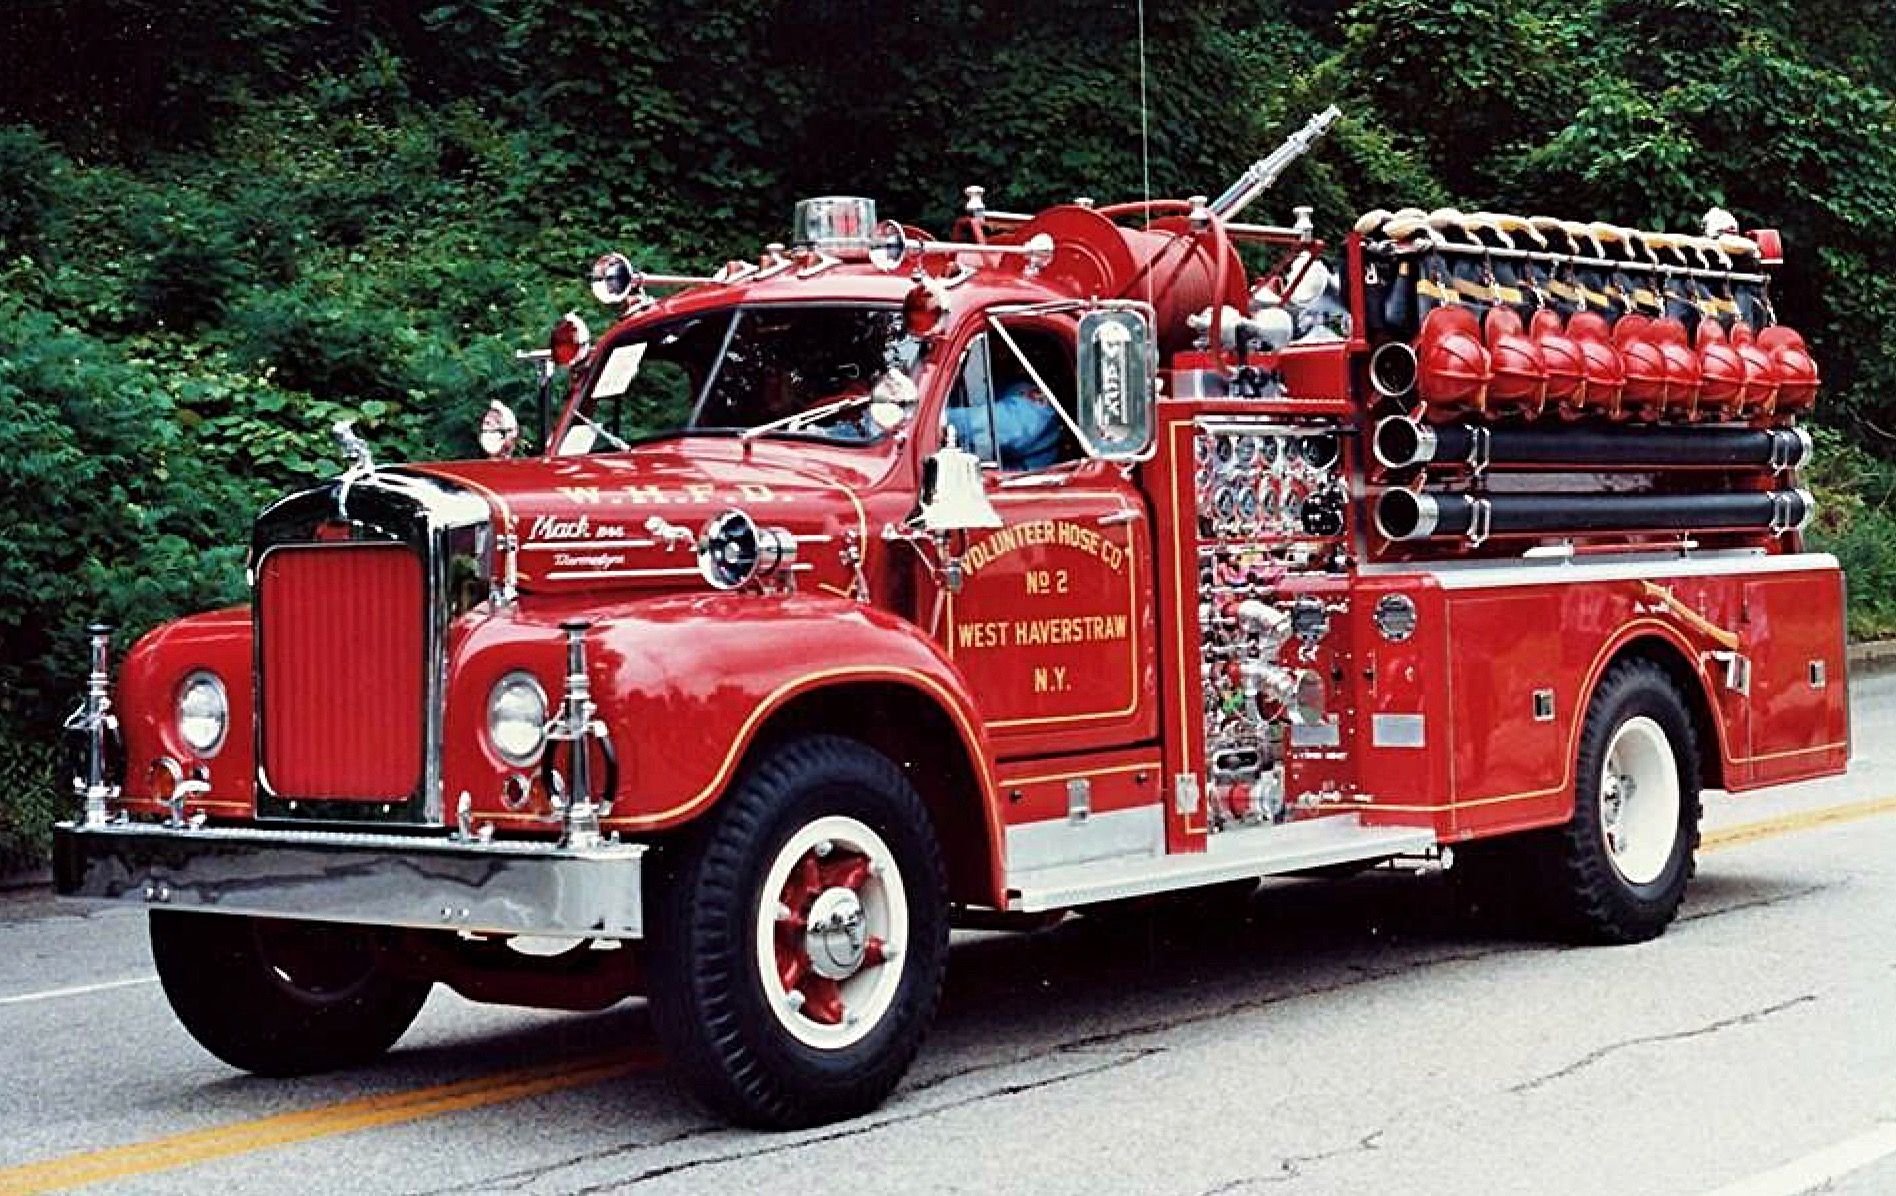 Пожарные автомобили делятся. Машина "Fire Truck" пожарная, 49450. ПНС пожарный автомобиль. АЦ-1.0-40 Isuzu пожарная техника. Пожарные автомобили США.